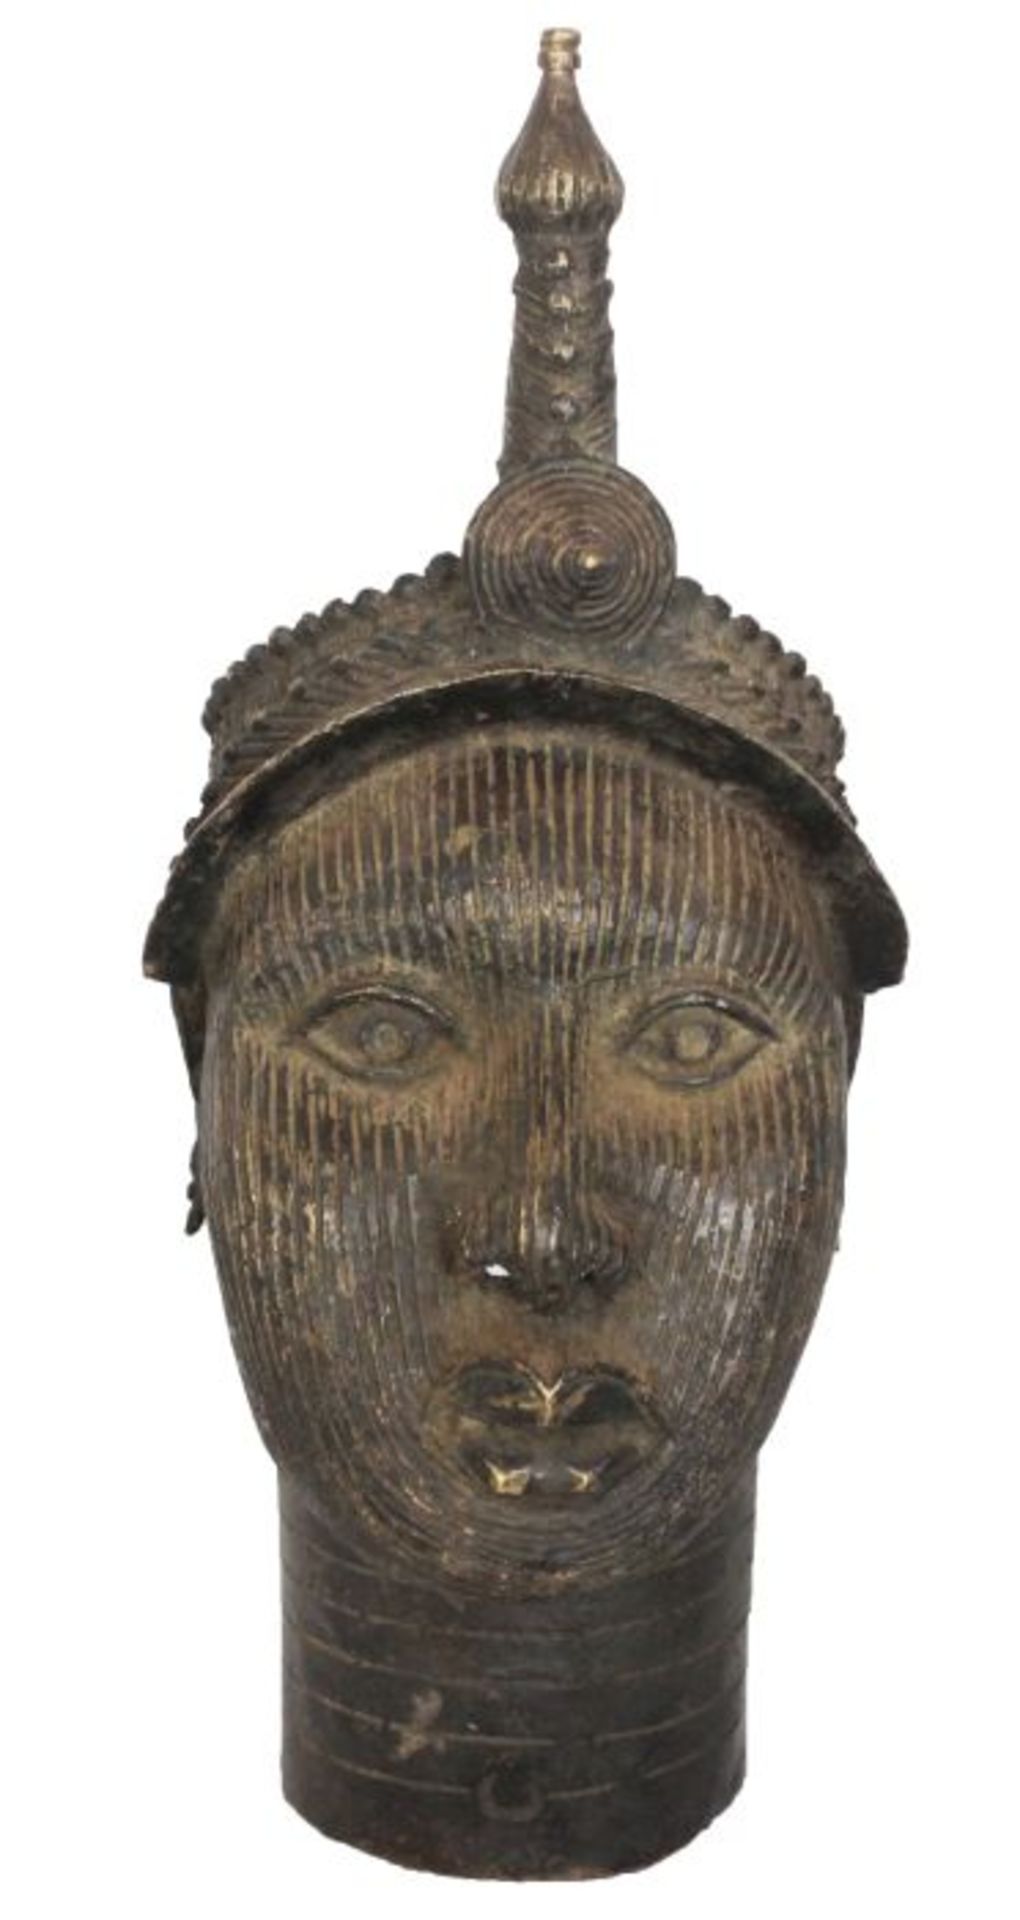 Königin-Kopf aus Benin, Nigeria aus Bronze, Altersspuren, Höhe ca. 45 cm